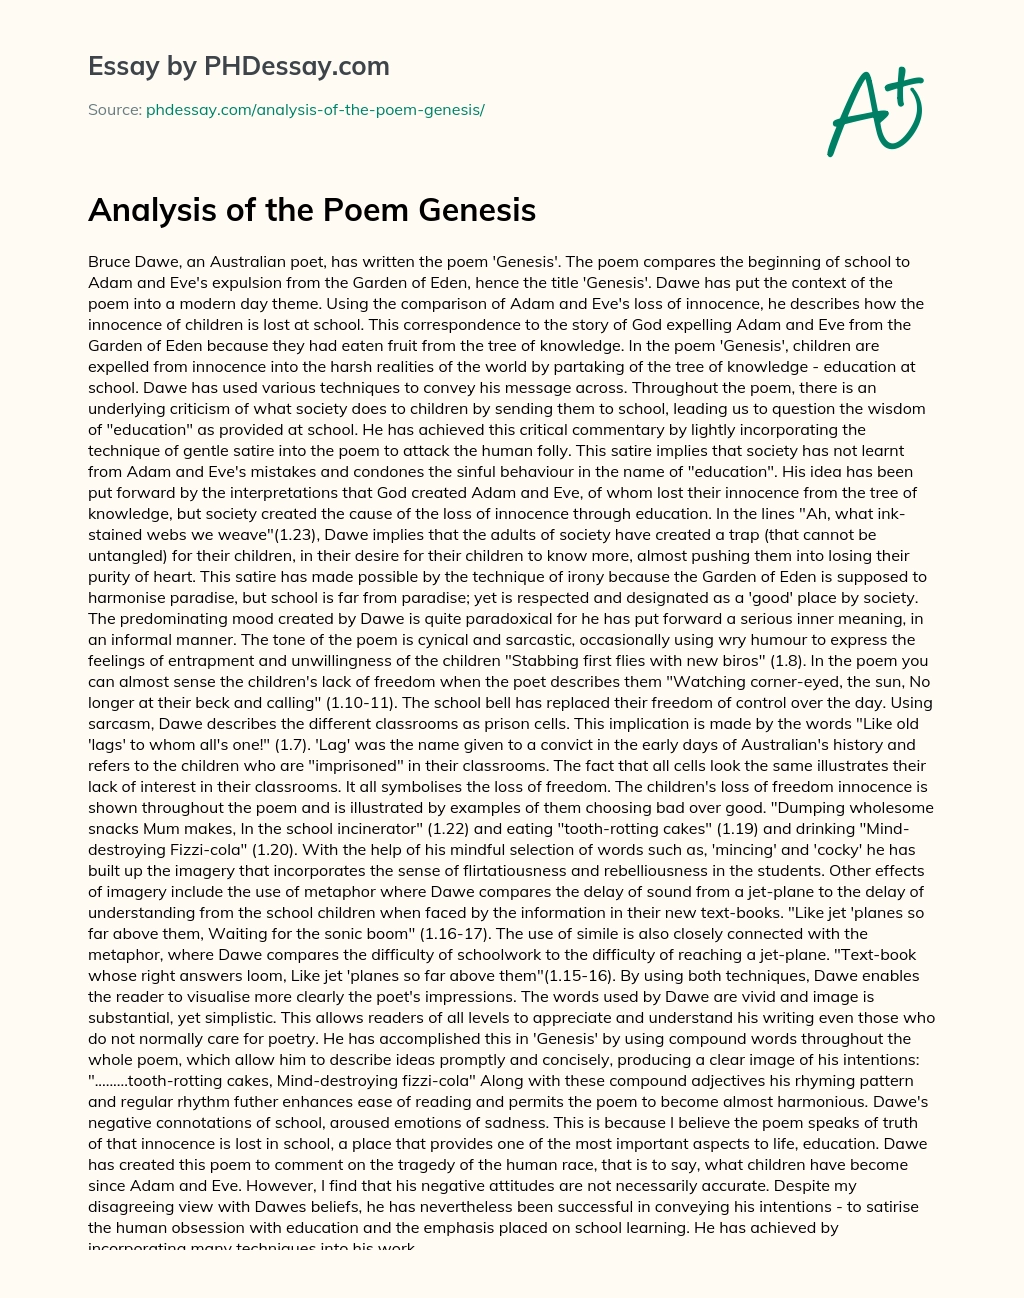 Analysis of the Poem Genesis essay